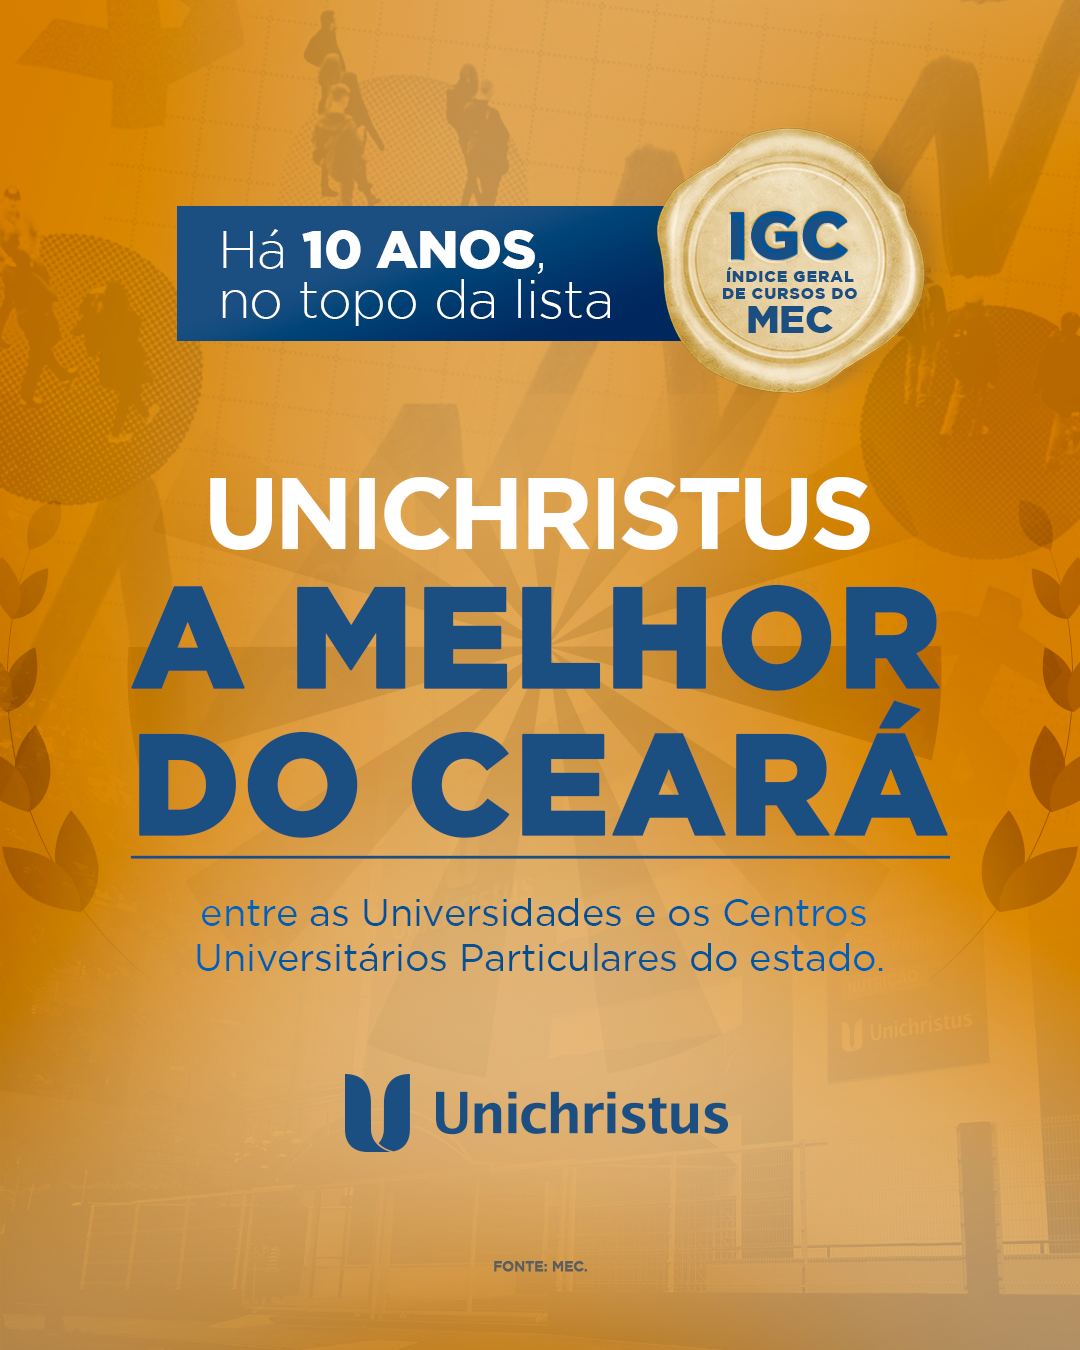 Há 10 anos, a Unichristus se mantém como a MELHOR instituição privada DO CEARÁ